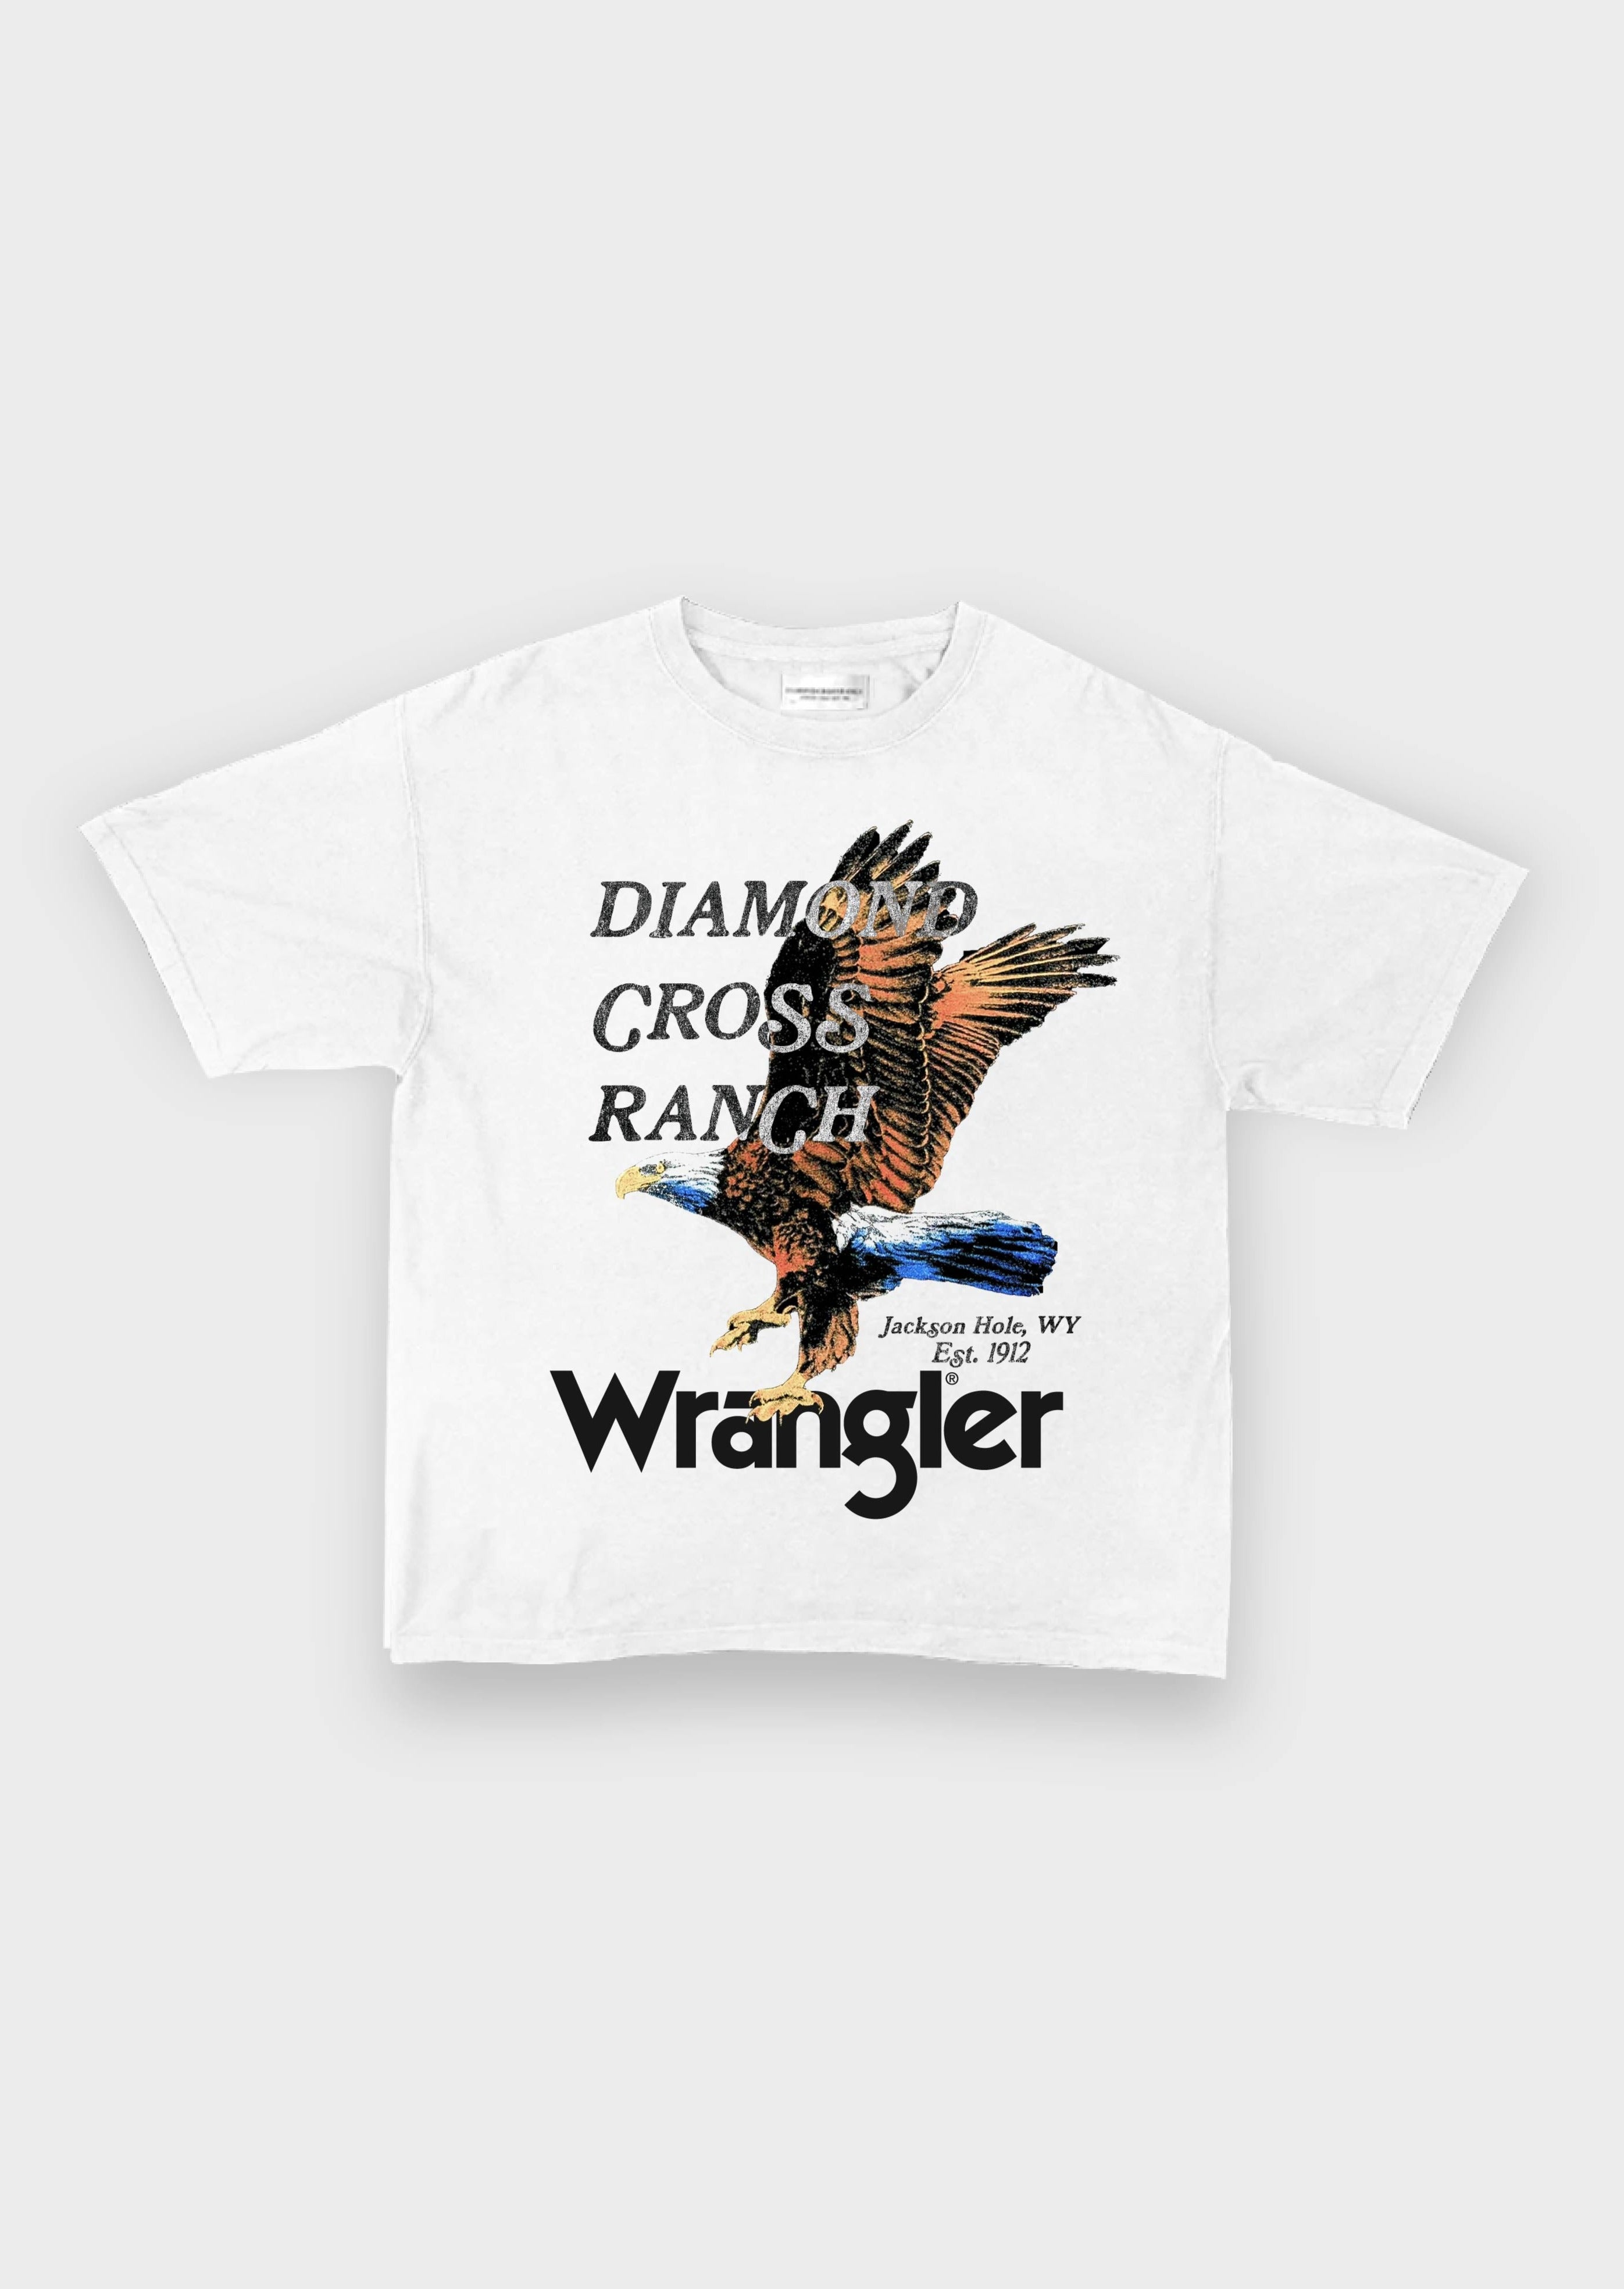 Wrangler x DCR